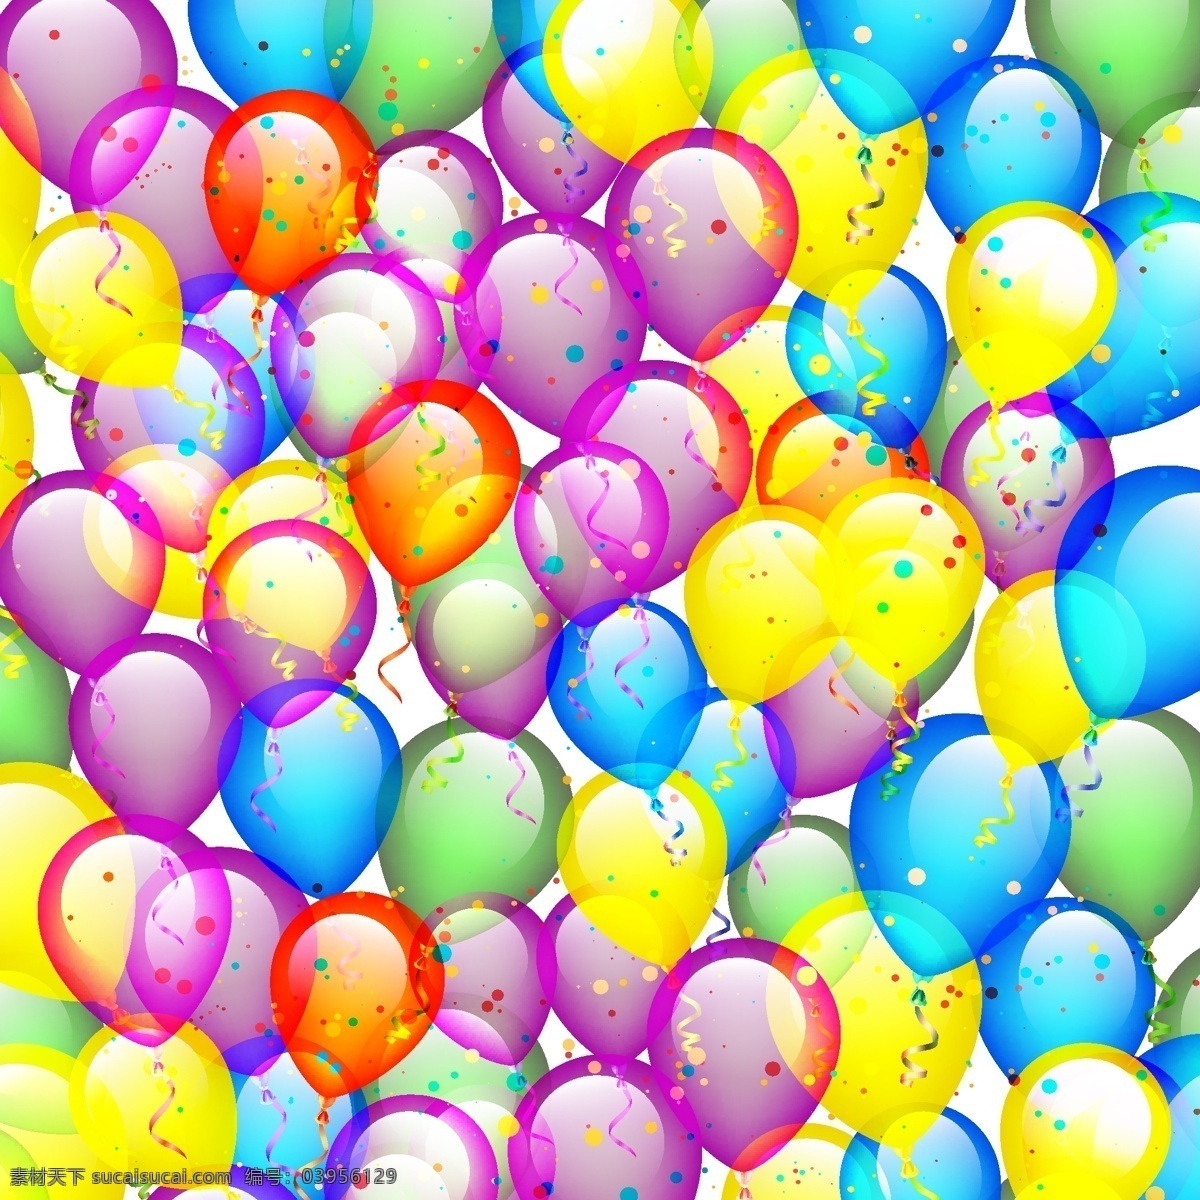 彩色 气球 矢量 球 派对 派对装饰 彩色气球 矢量素材